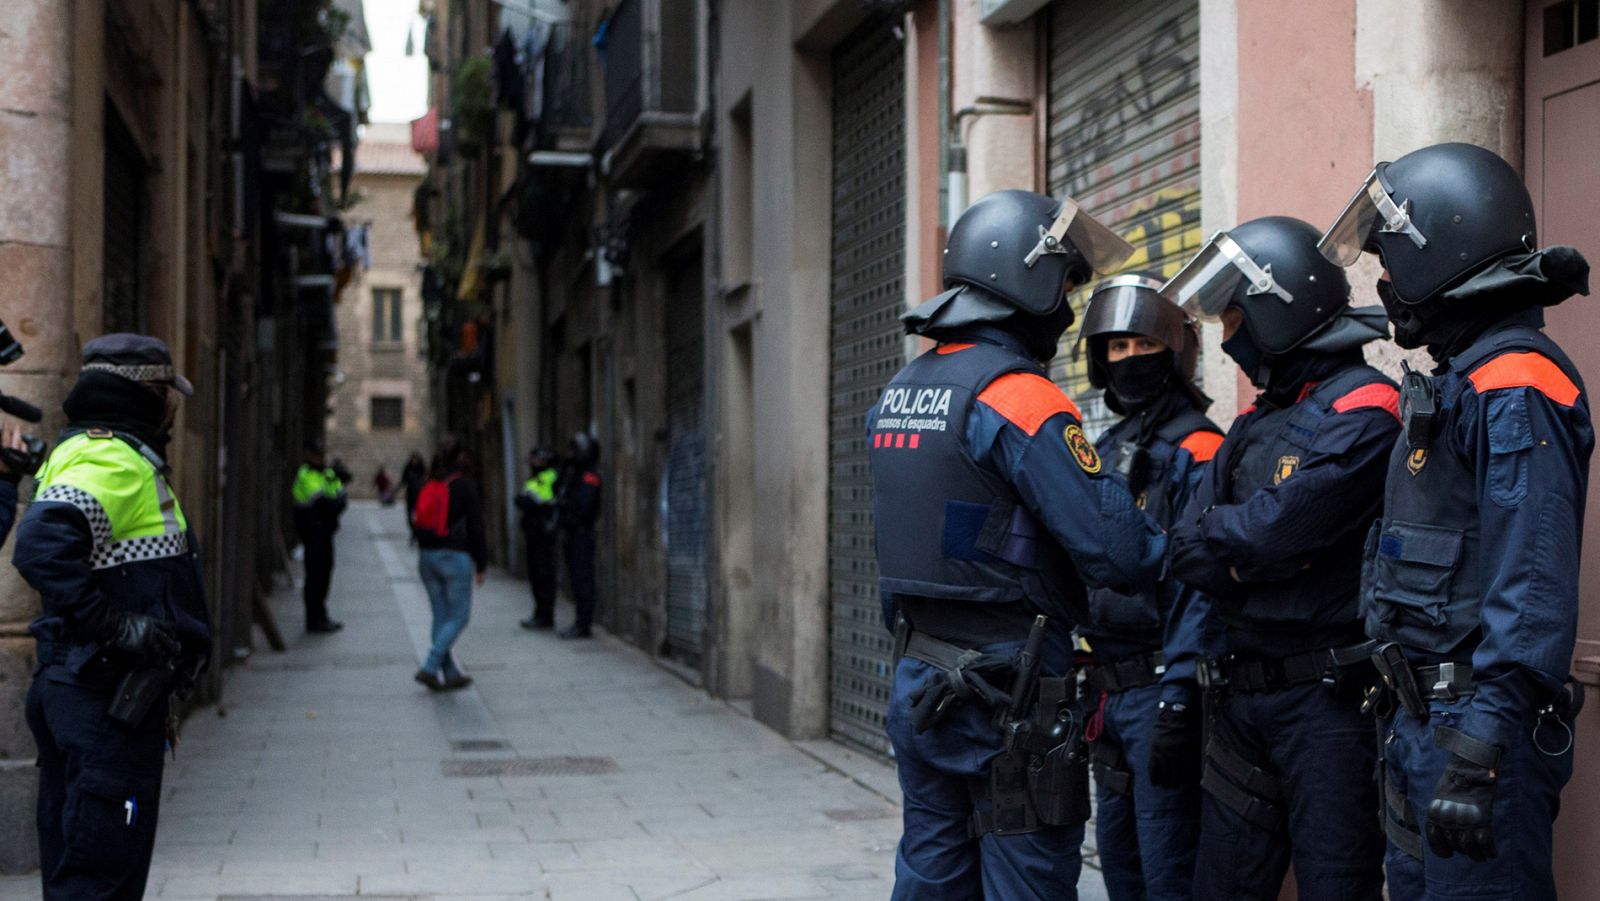 Macrorredada en Barcelona contra el tráfico de heroína